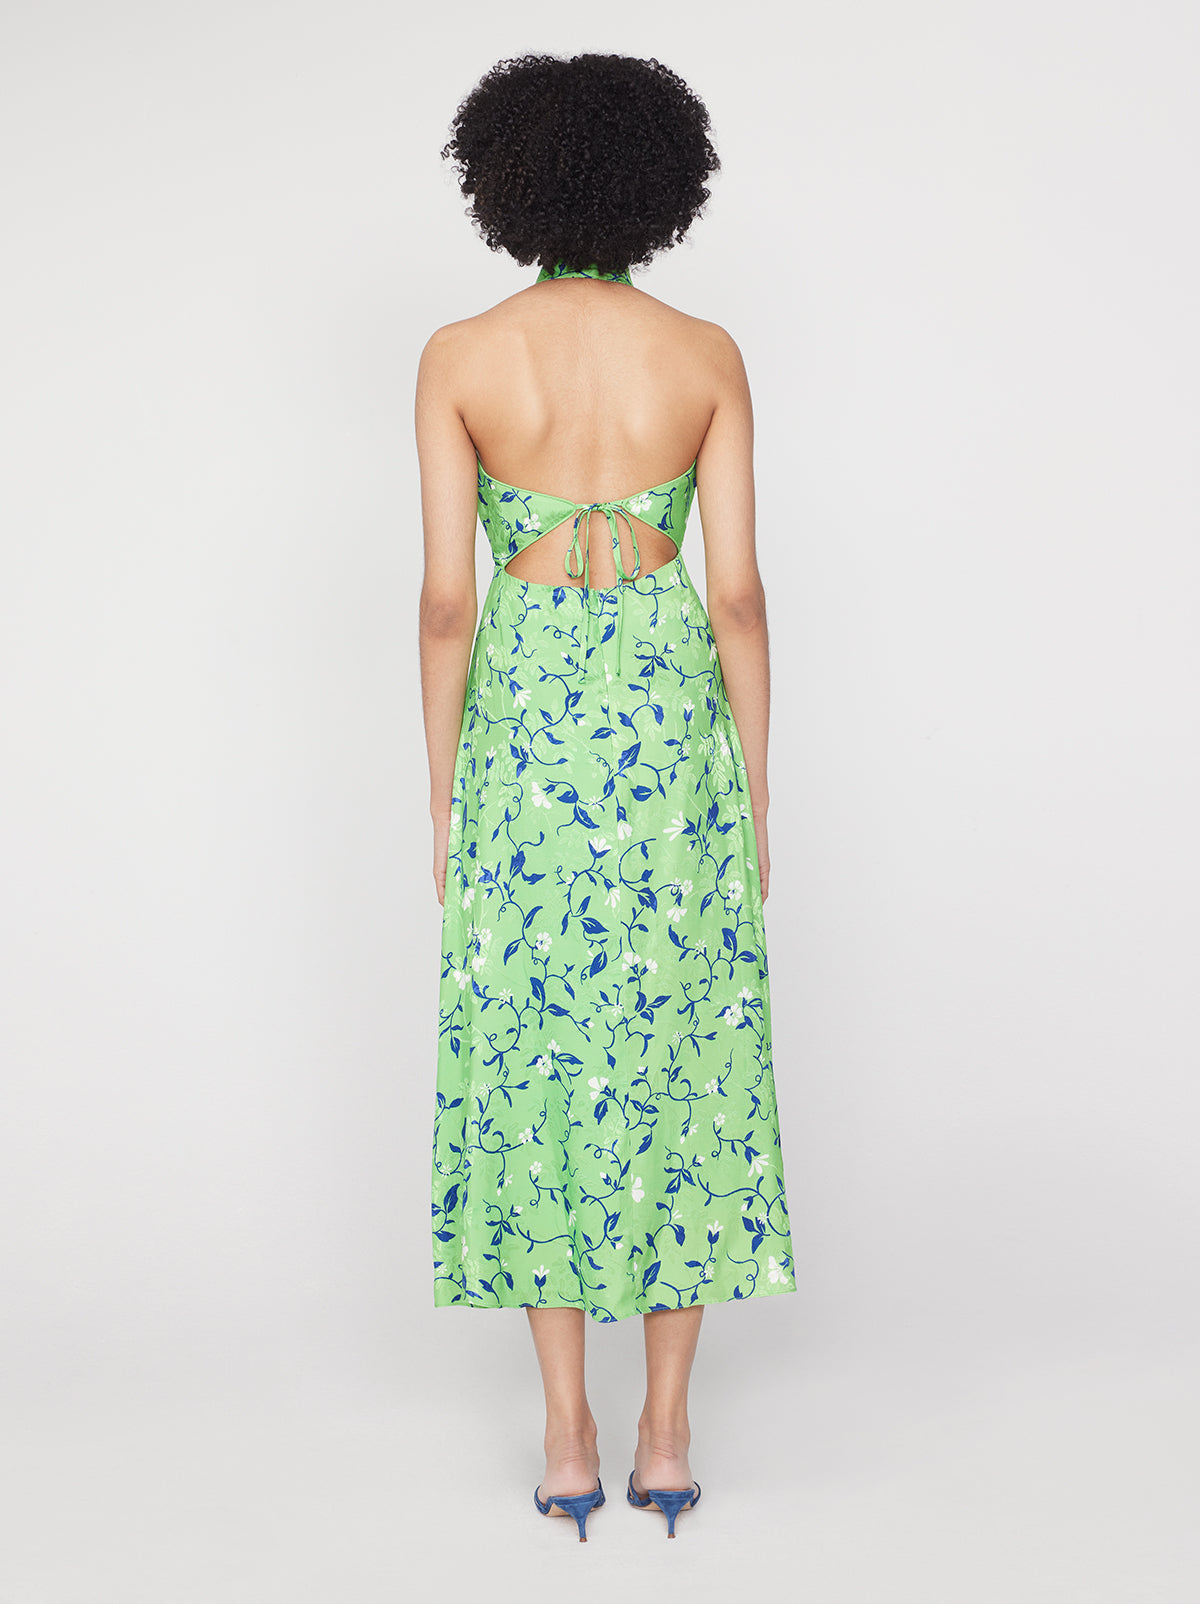 Willow Green Vine Print Halterneck Dress By KITRI Studio